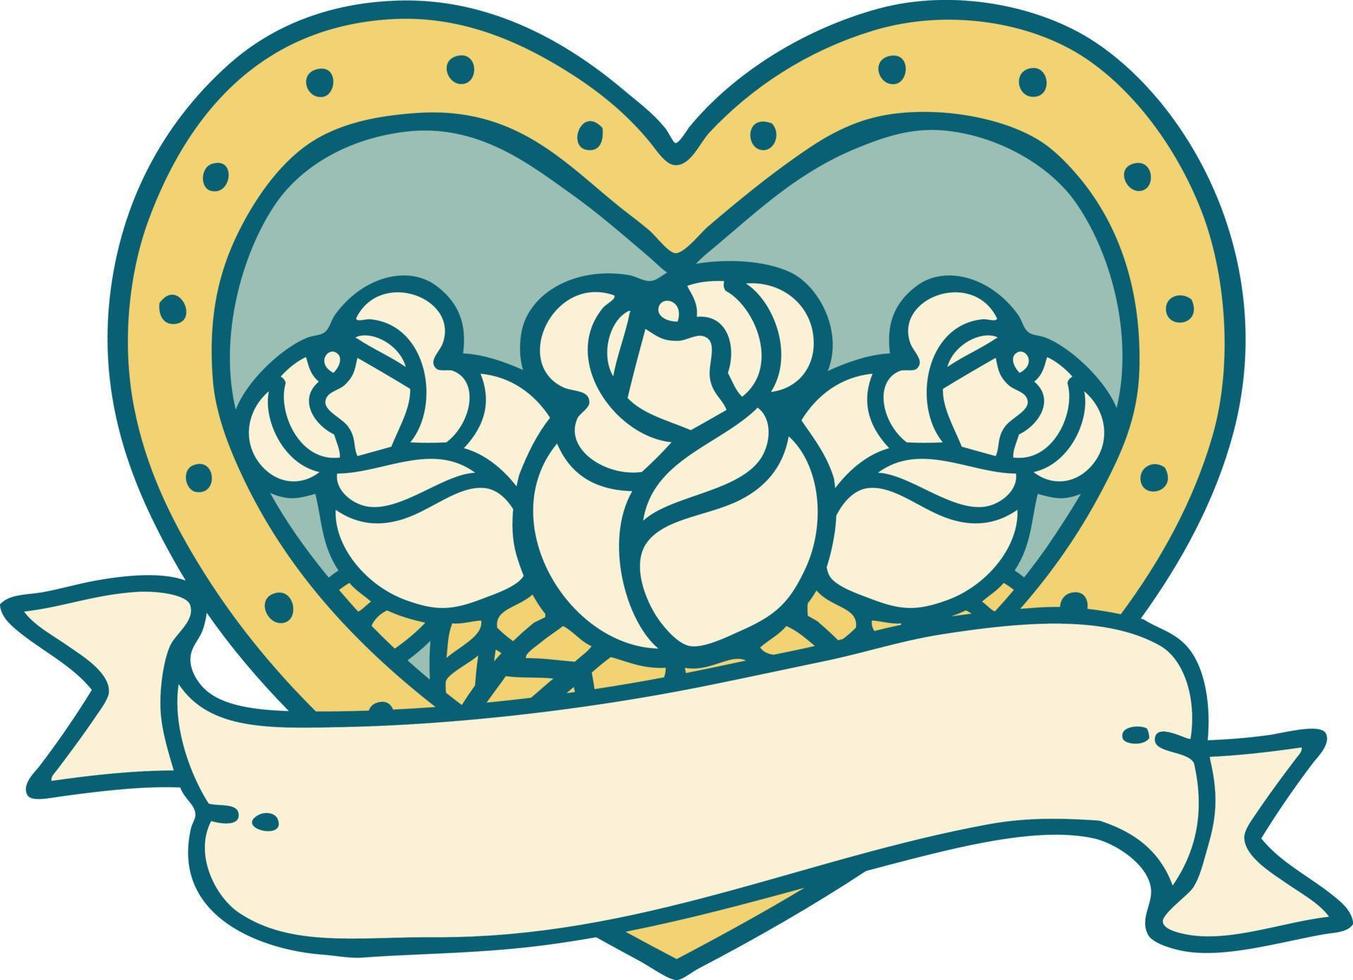 iconisch tatoeëren stijl beeld van een hart en banier met bloemen vector